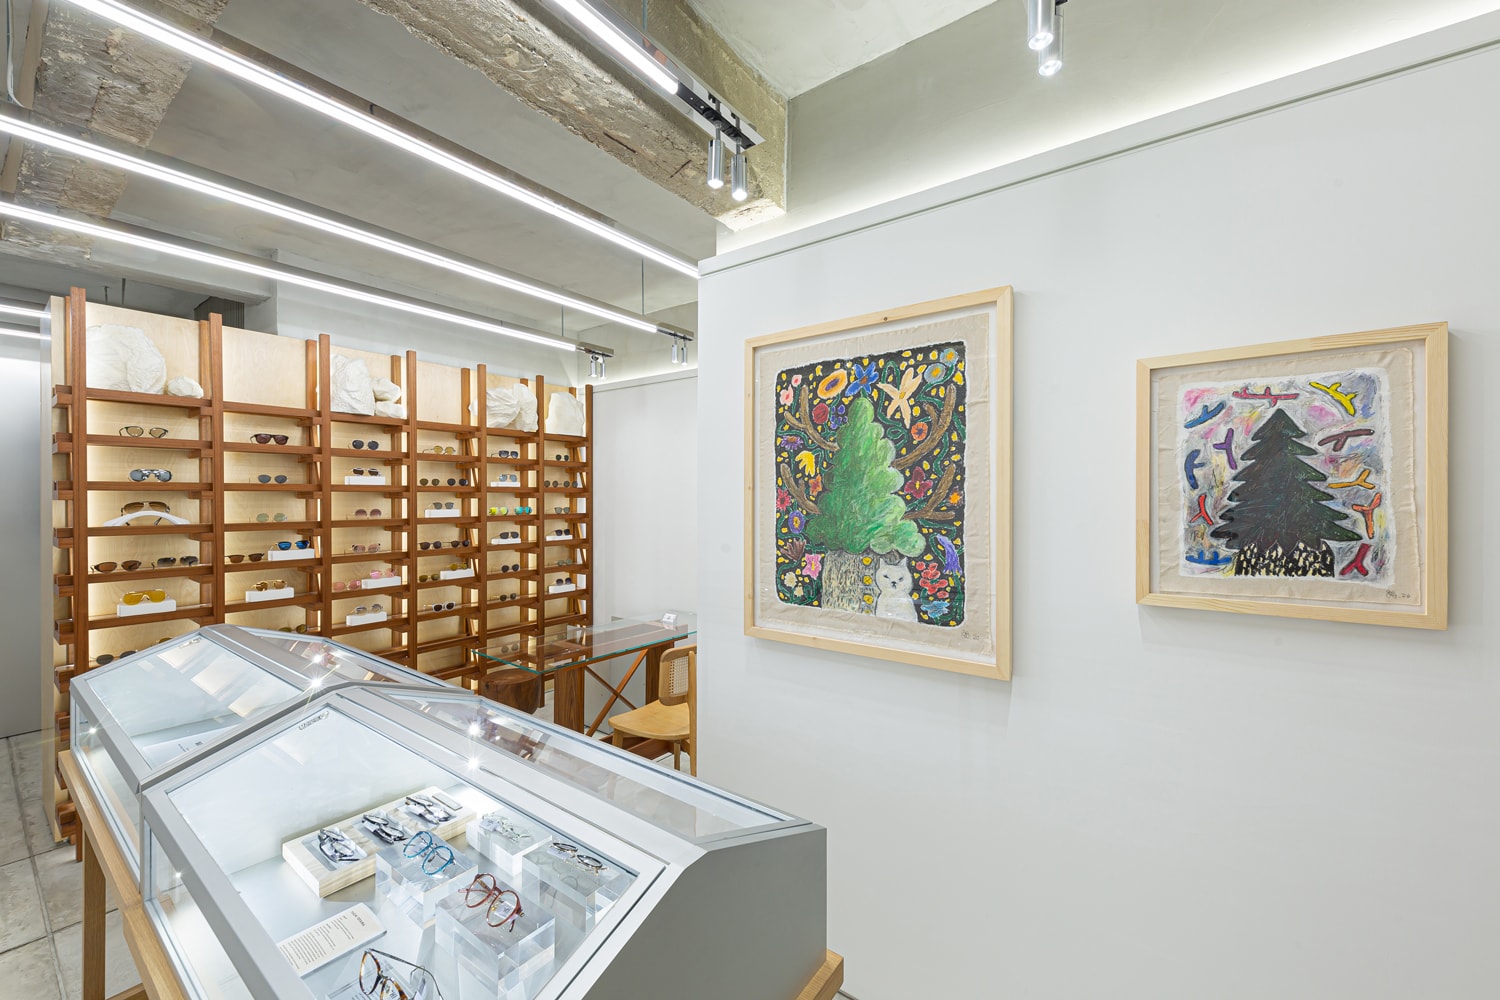 yuichi hirako growth rings warehouse gallery hong kong exhibition paintings artworks